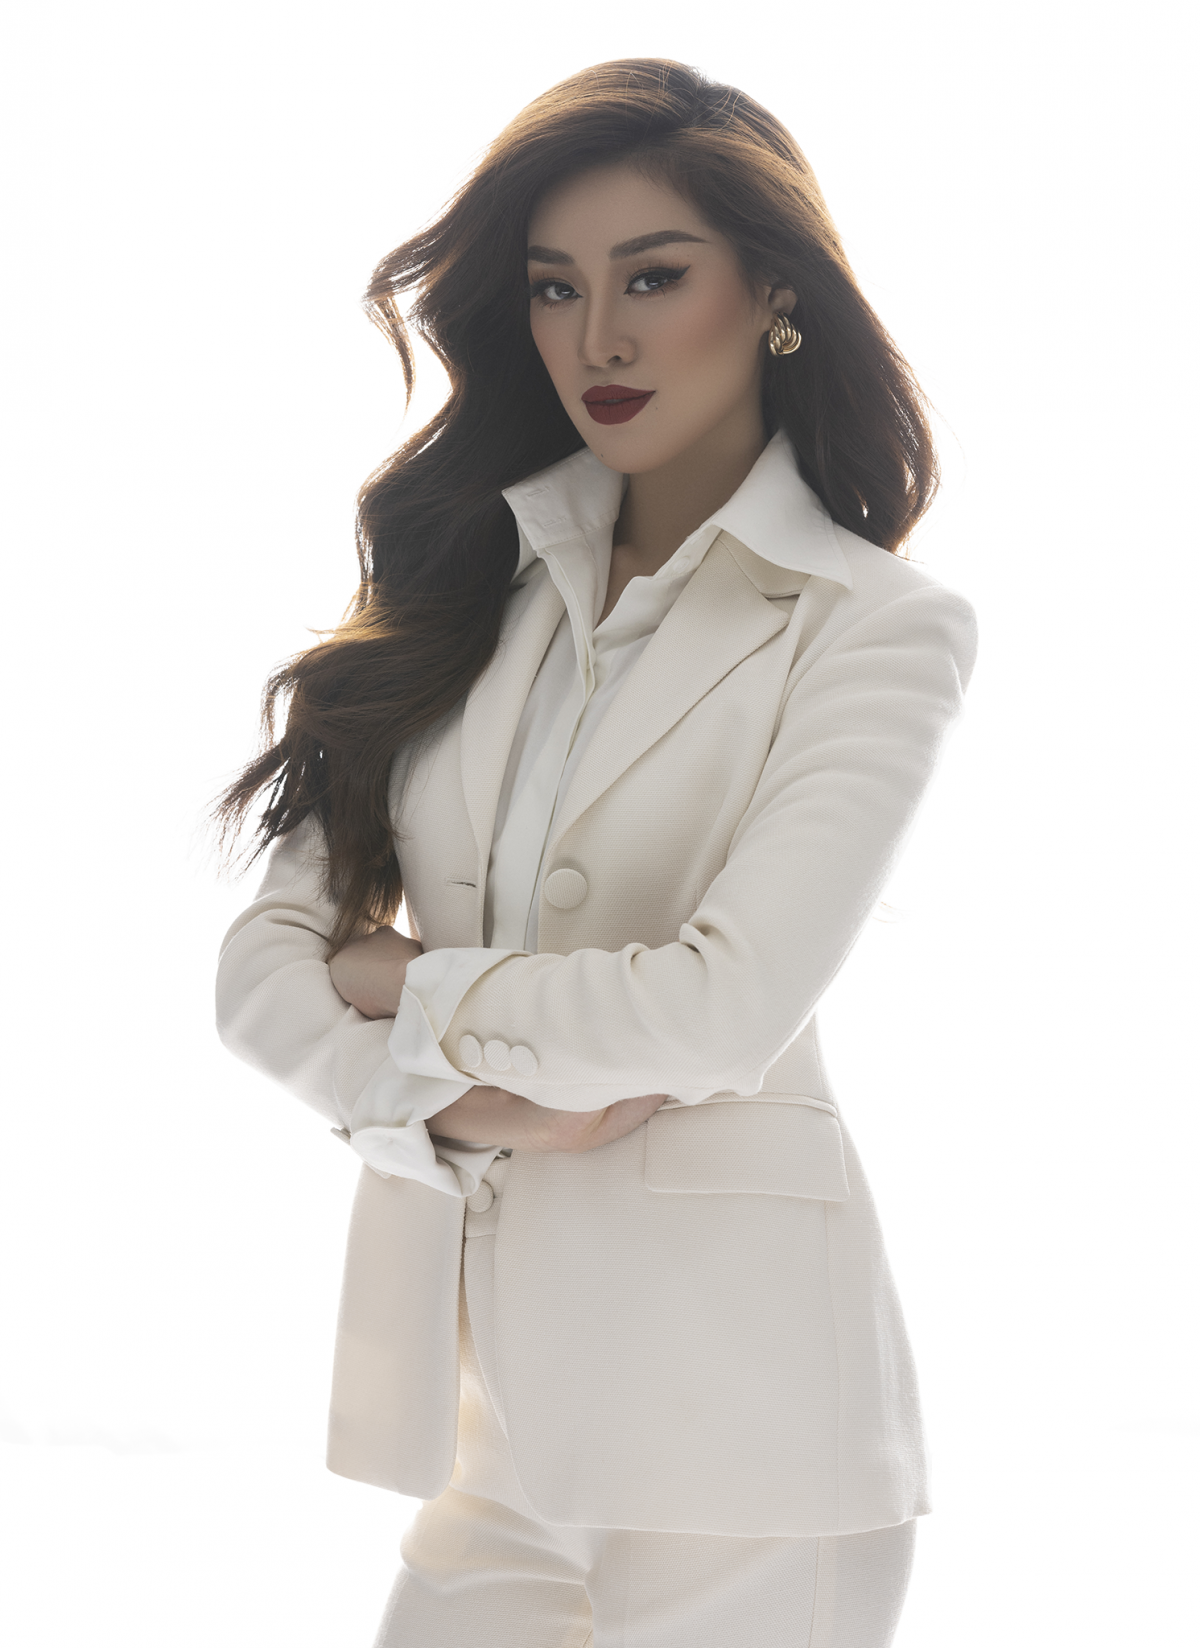 Hoa hậu Khánh Vân xây dựng hình ảnh nữ doanh nhân - Ảnh 4.